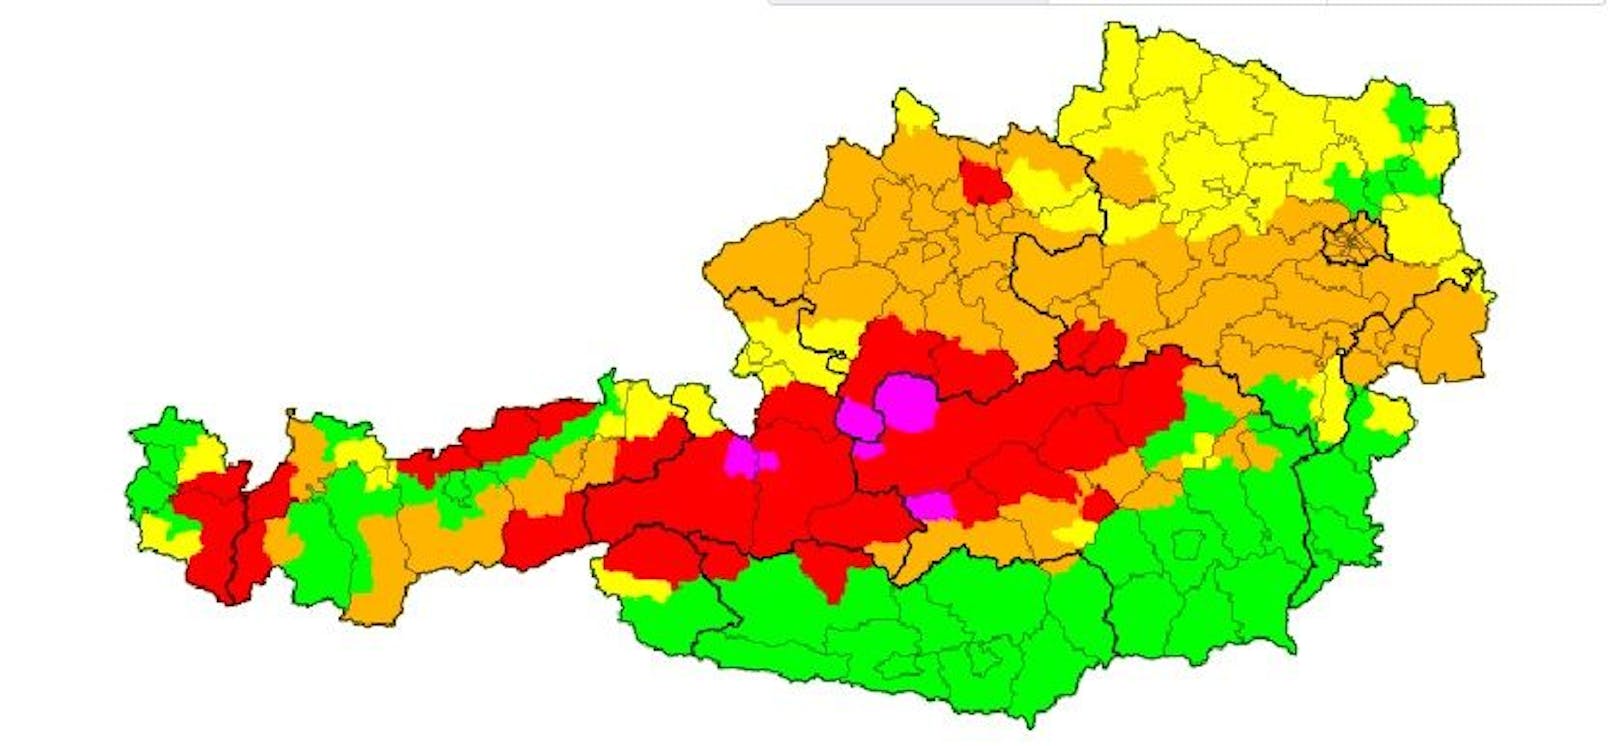 Für mehrere Gebiete in Salzburg, Oberösterreich und der Steiermark gilt die höchste Unwetter-Warnstufe.